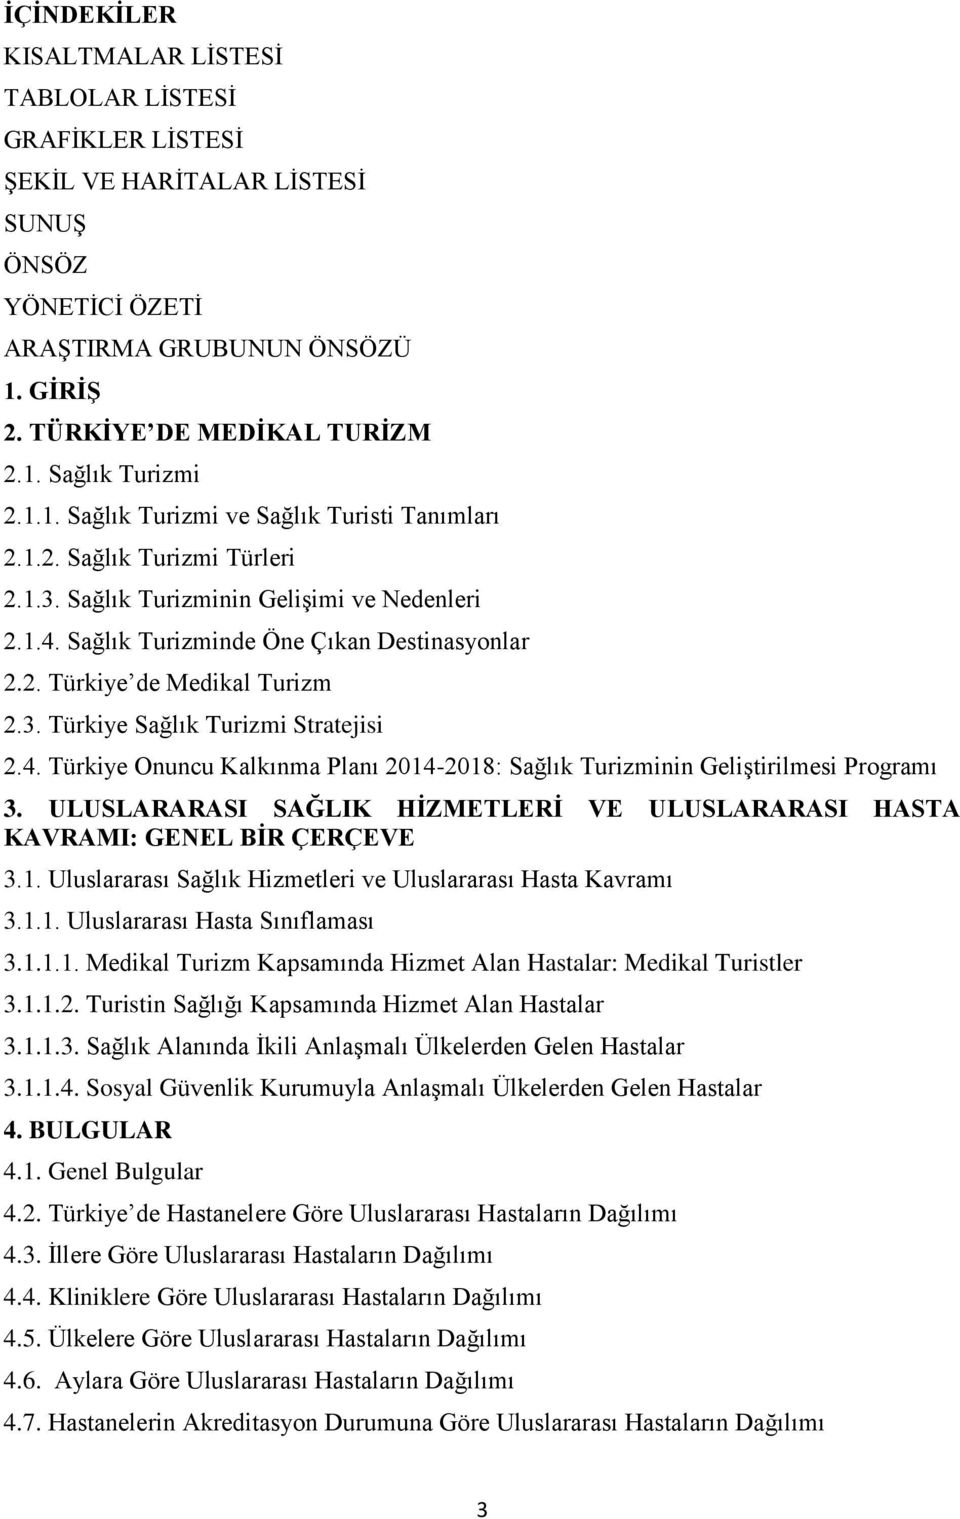 3. Türkiye Sağlık Turizmi Stratejisi 2.4. Türkiye Onuncu Kalkınma Planı 2014-2018: Sağlık Turizminin Geliştirilmesi Programı 3.